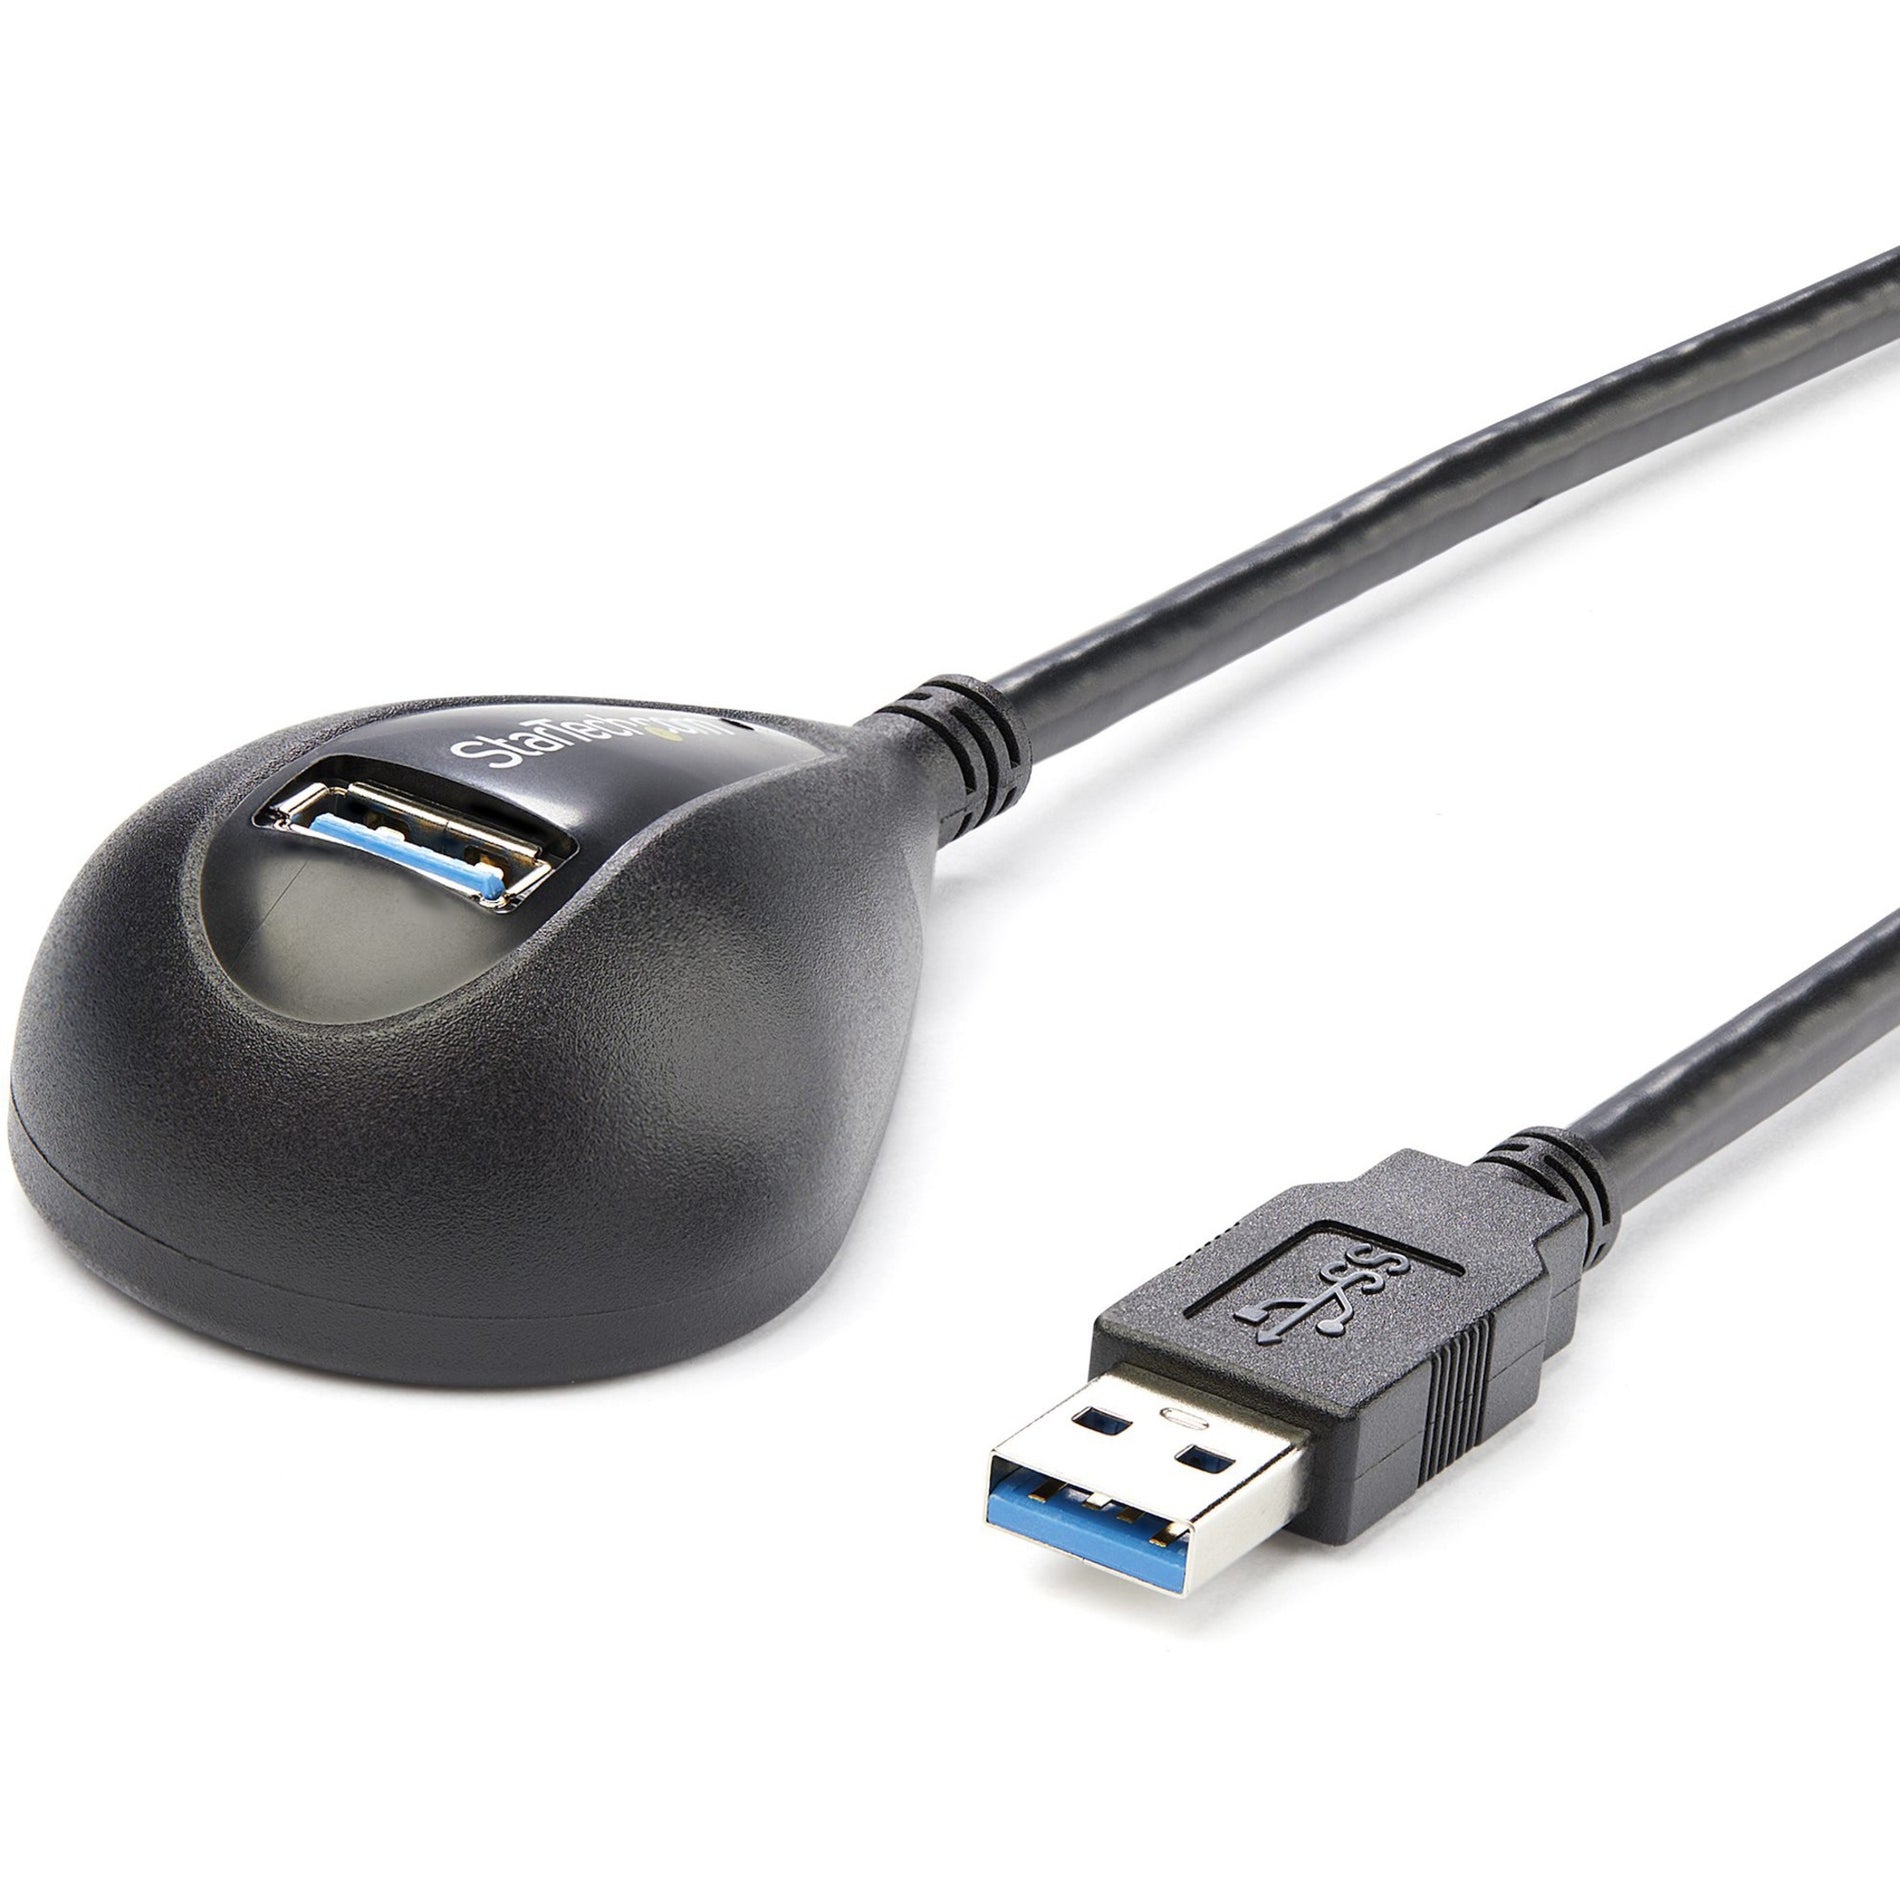 StarTech.com كابل تمديد USB 3.0 سوبر سبيد لسطح المكتب باللون الأسود بطول 5 أقدام، ذكر إلى أنثى، حماية EMI، معدل نقل بيانات 5 جيجابت في الثانية